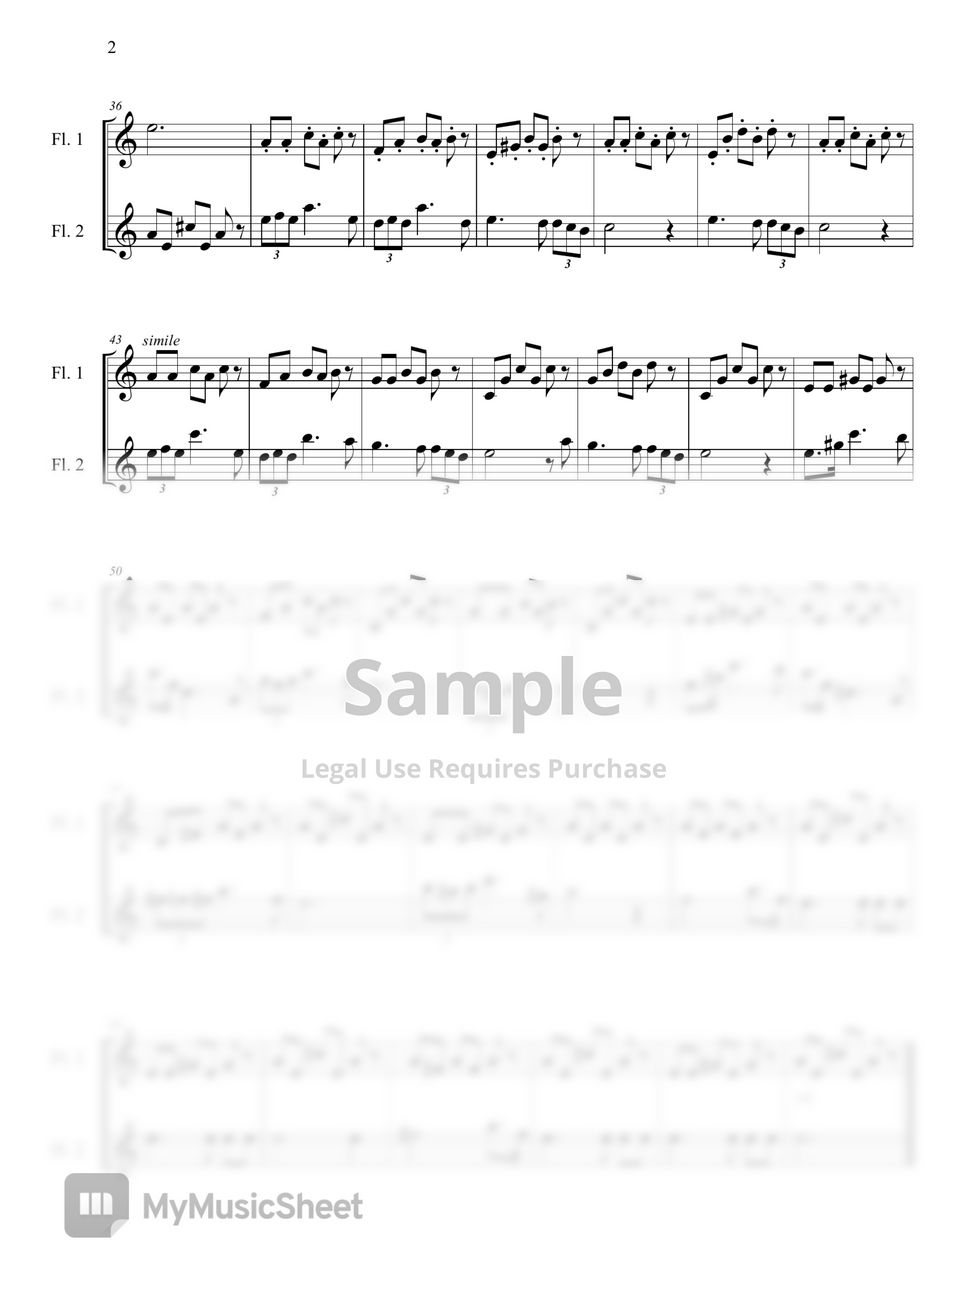 F. Schubert - 세레나데(Serenade, Flute Duet, 플룻 듀엣 (Flute Duet) by 바론아트